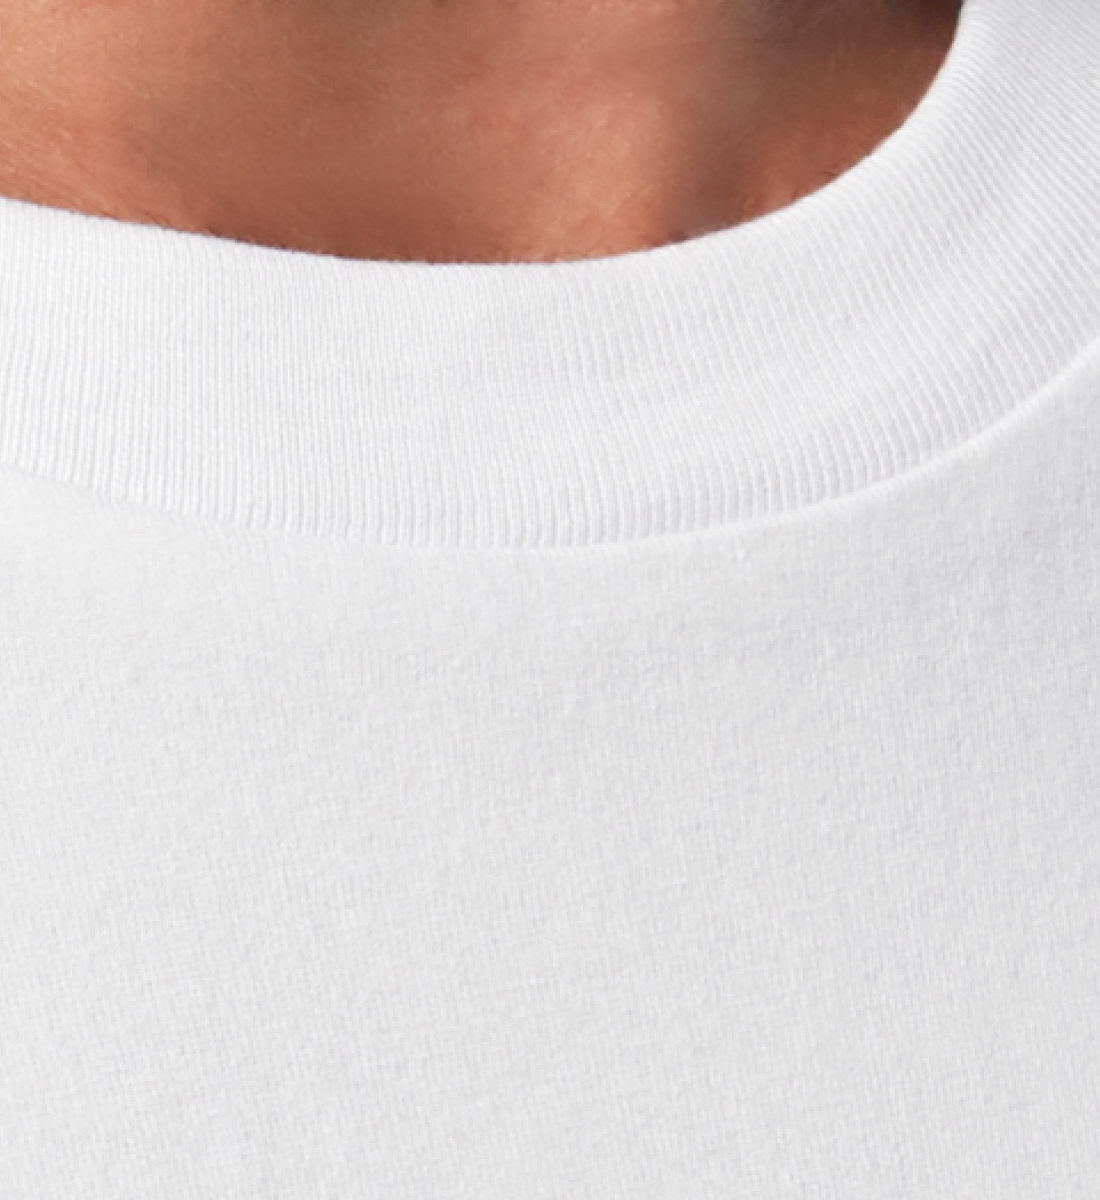 Weißes T-Shirt Unisex Relaxed Fit für Damen und Herren bedruckt mit dem Design der Roger Rockawoo Kollektion Mountainbike Shredding Culture Community